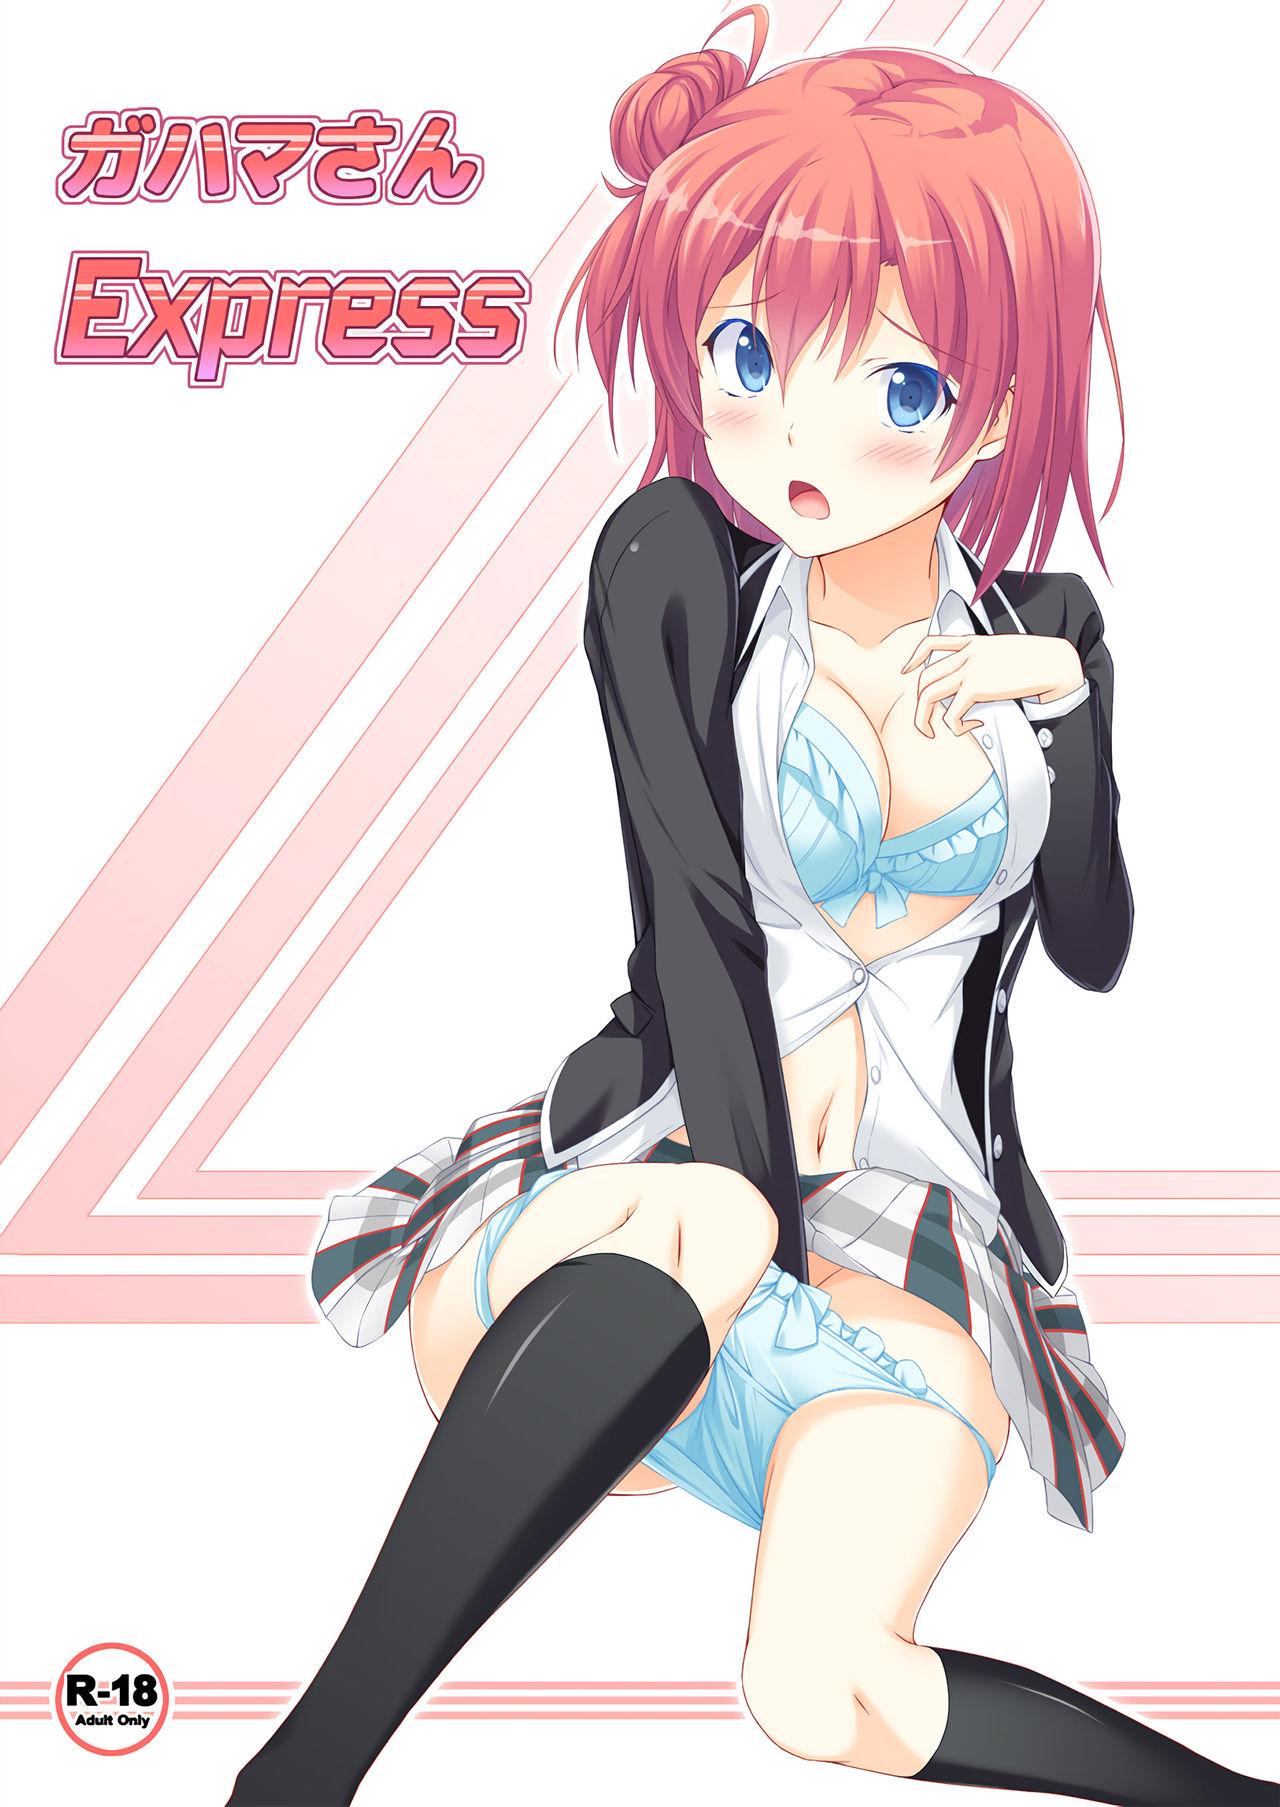 Gahama-san Express 0